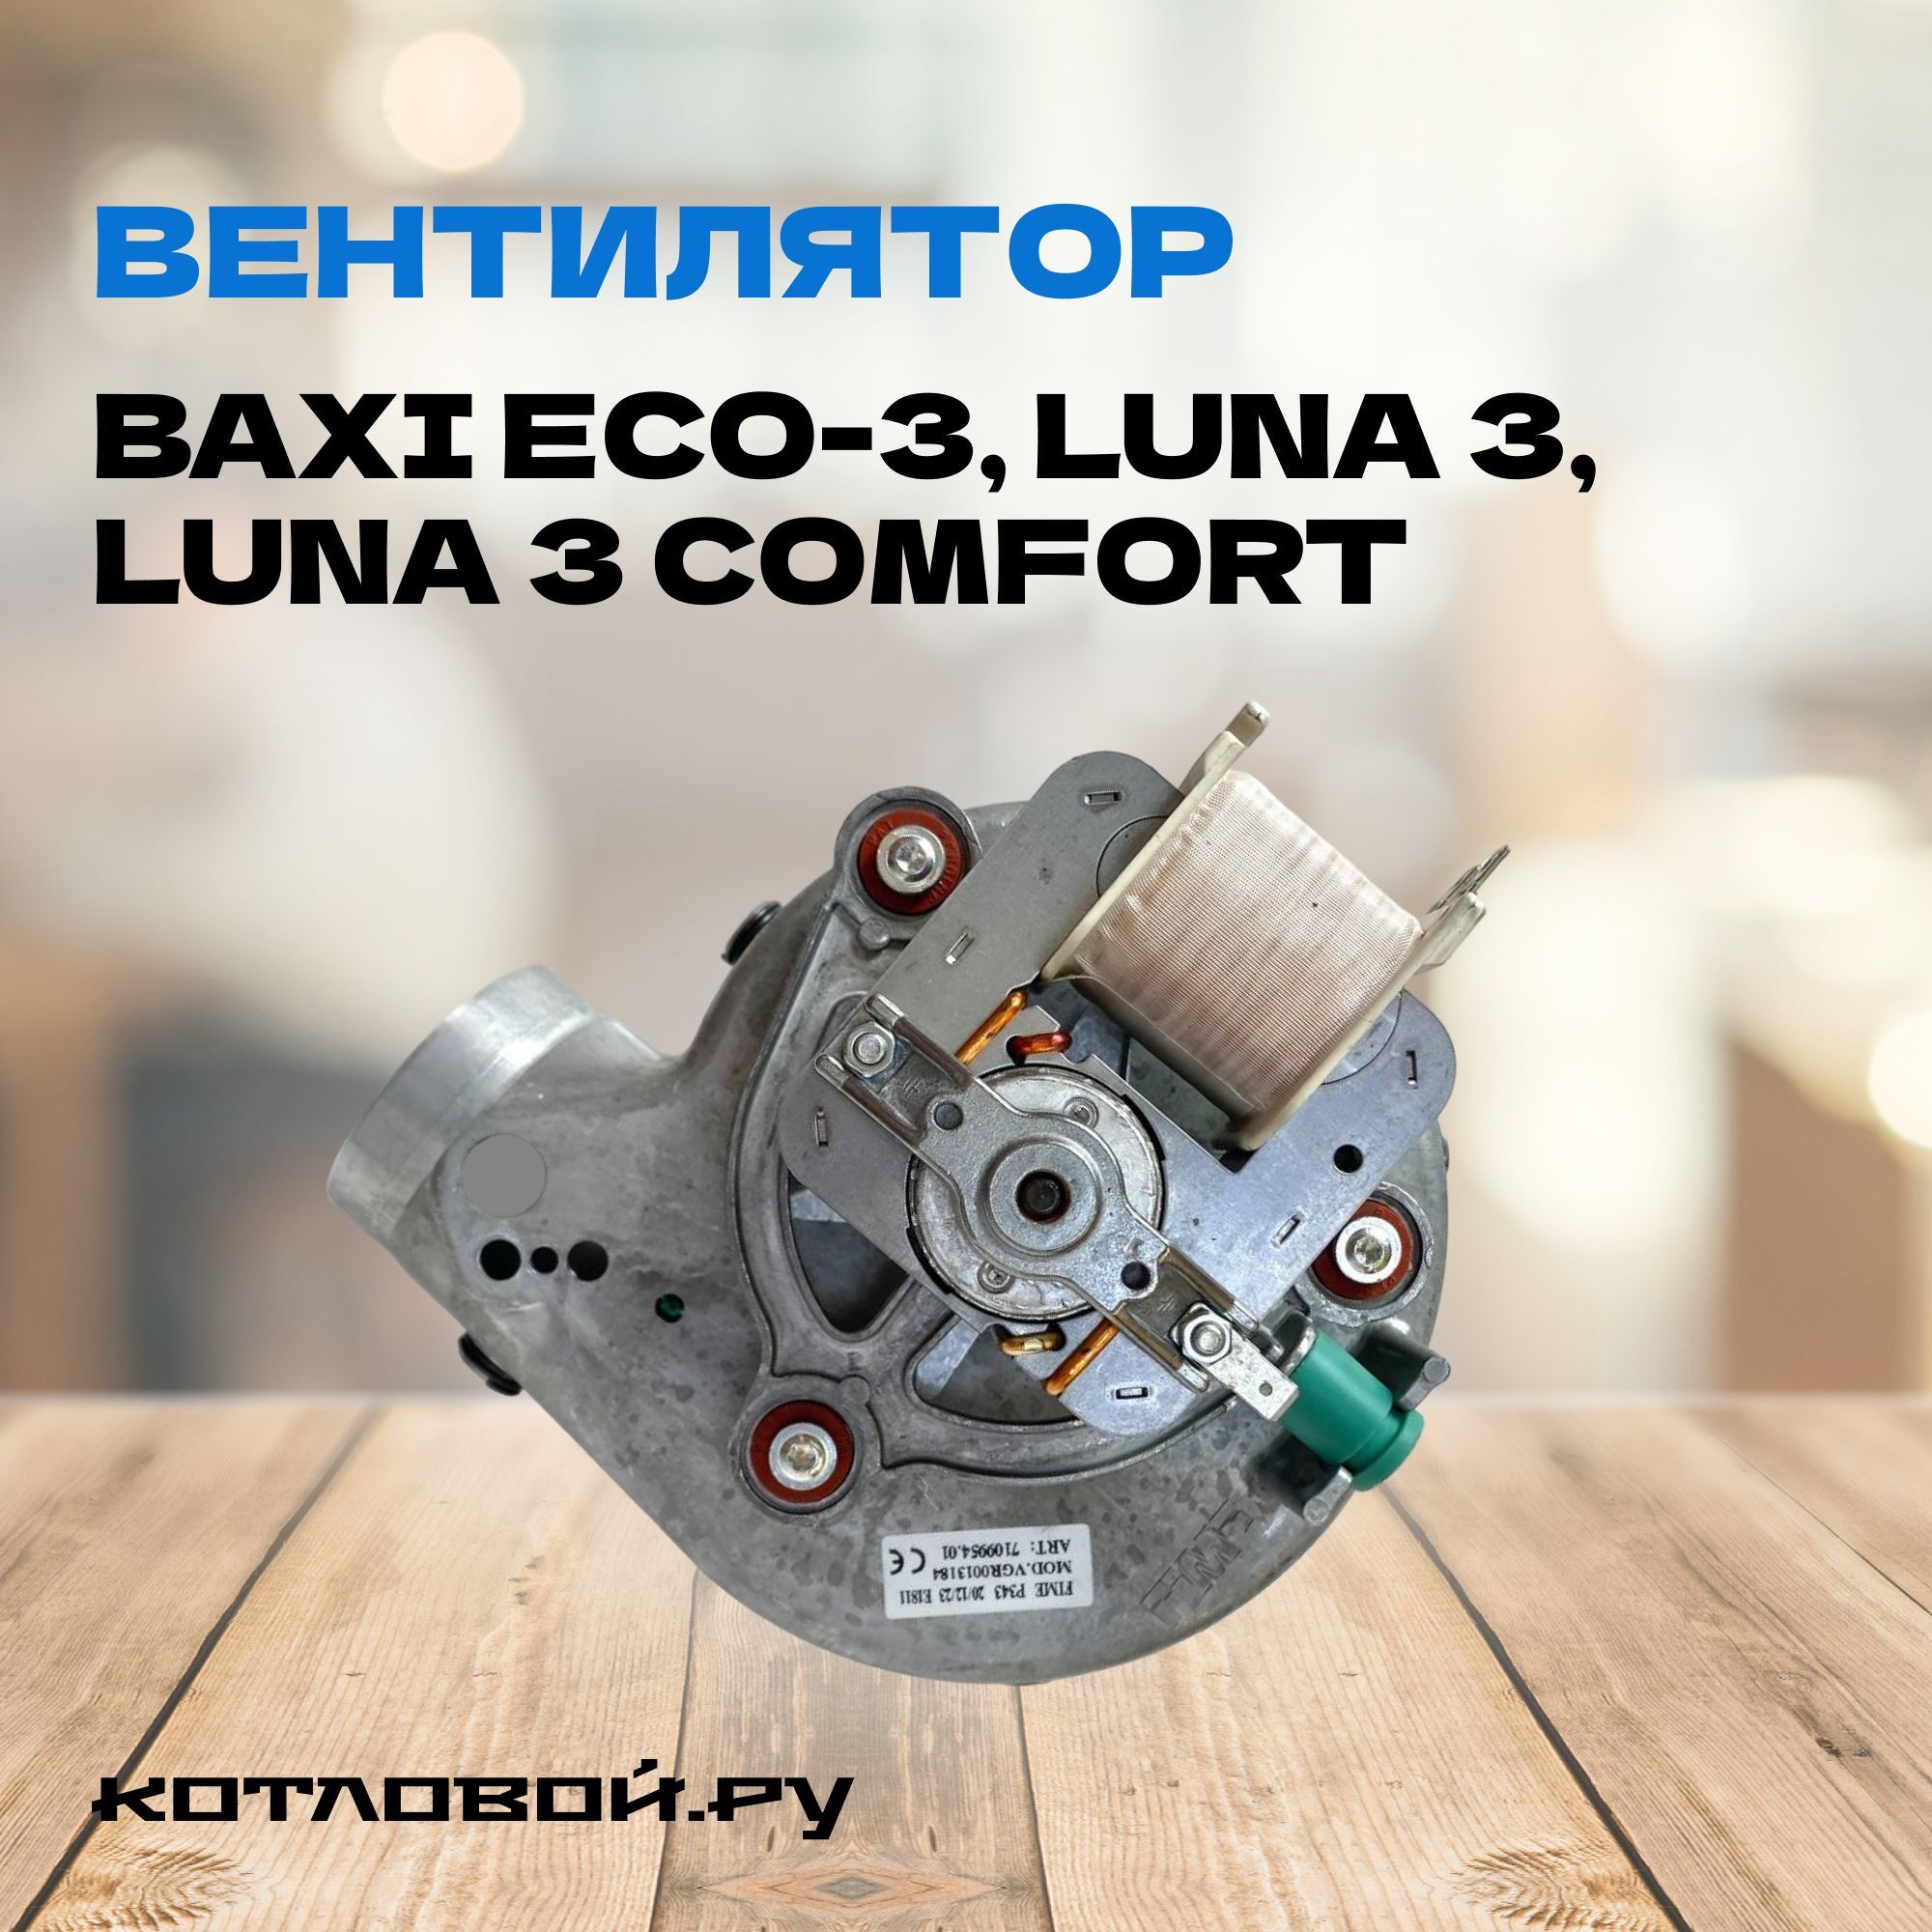 Вентилятор для котлов Baxi ECO-3, Luna 3, Luna 3 Comfort, арт. 5653850